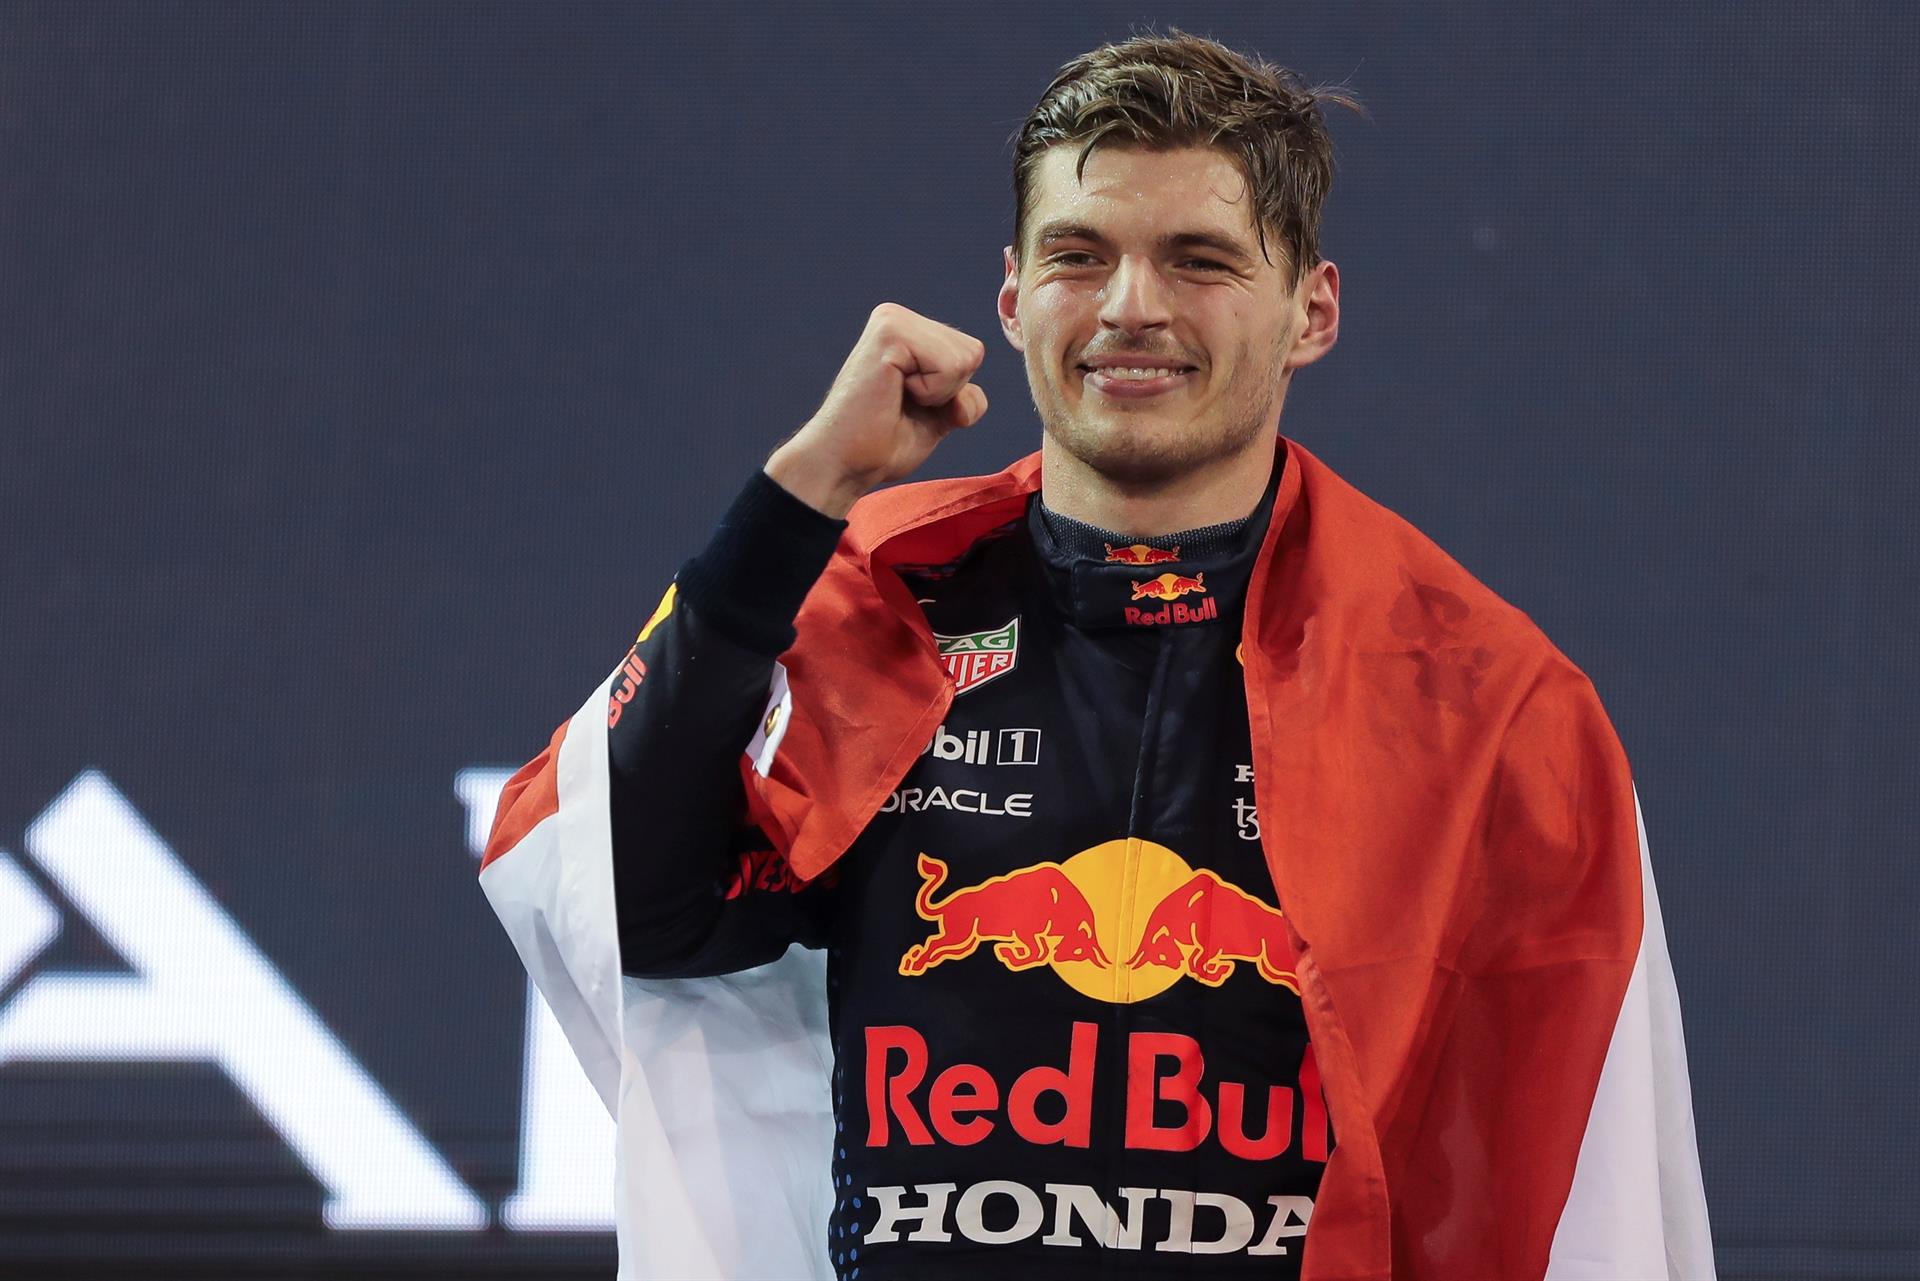 Max Verstappen celebra vitória da Fórmula 1 em Abu Dhabi, 2021